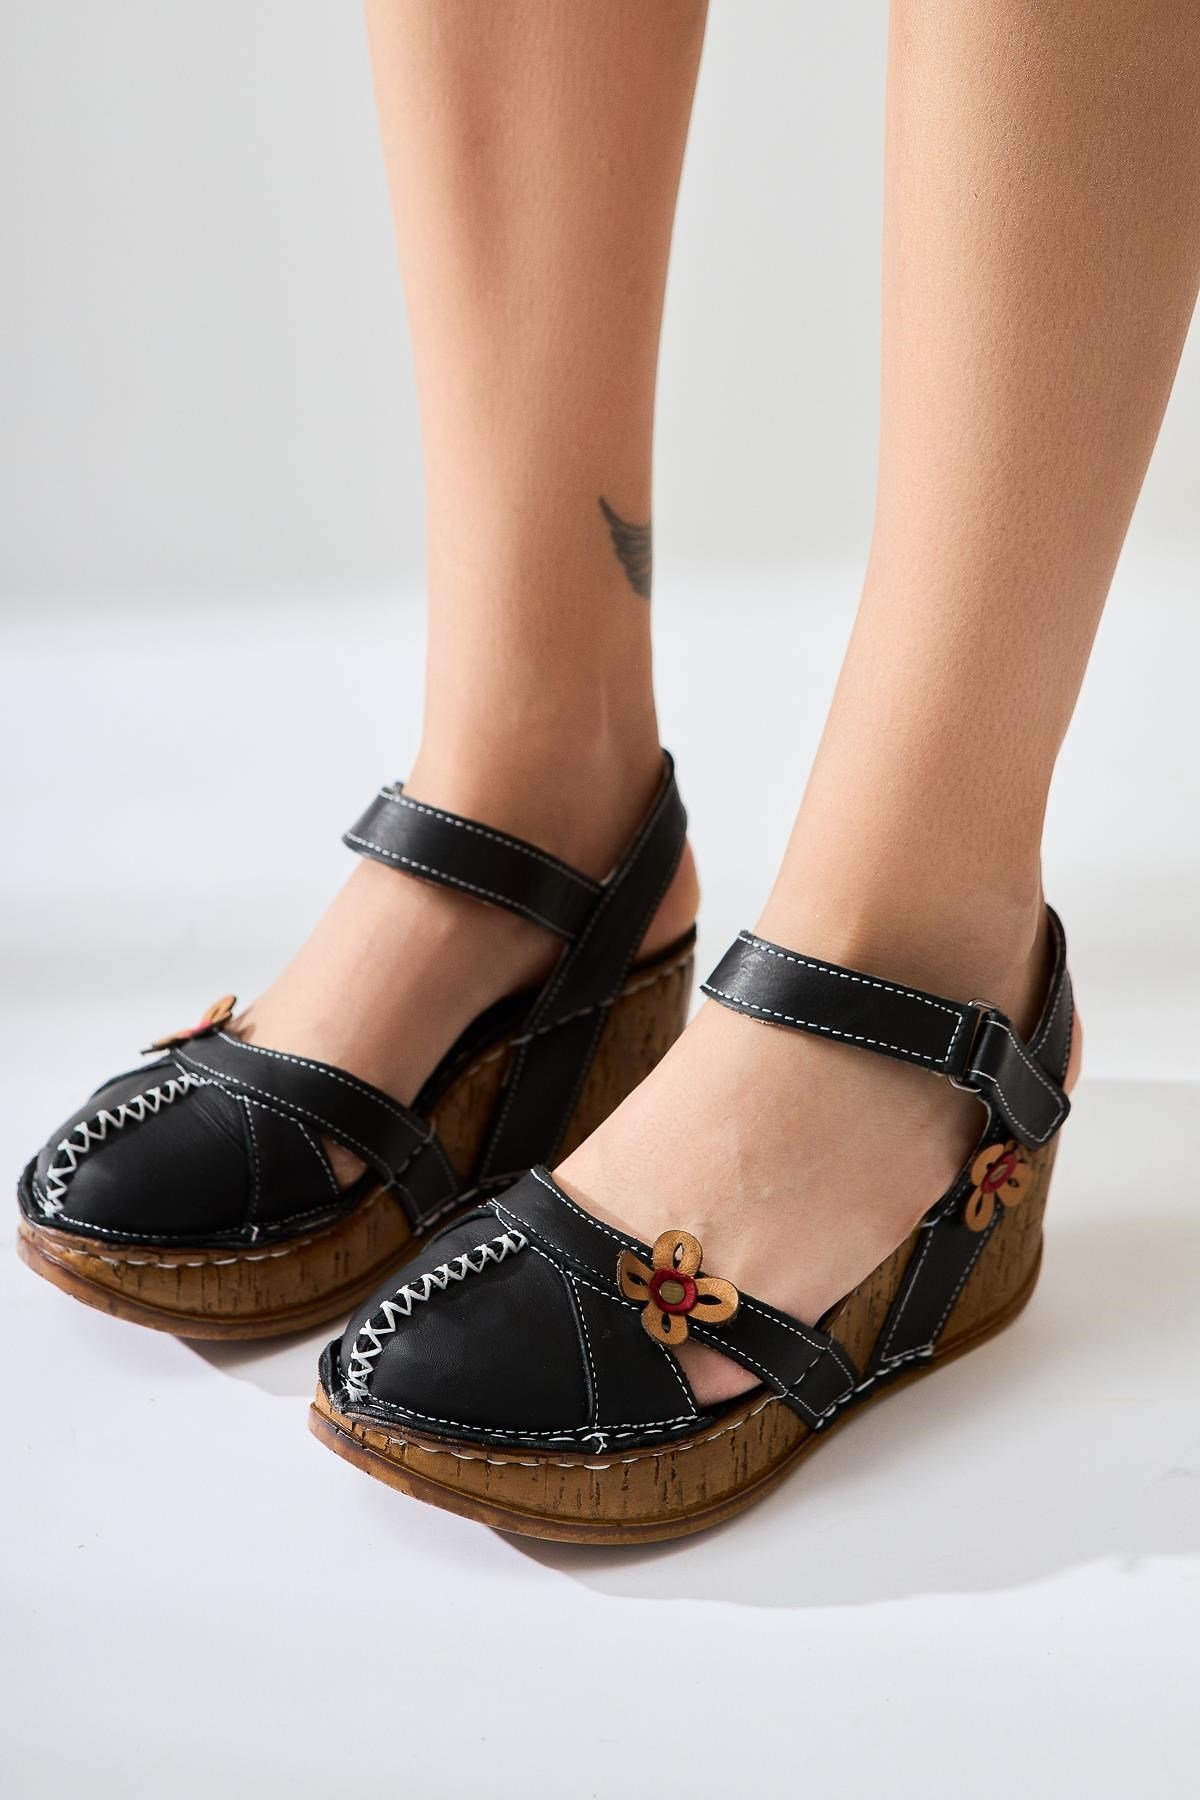 Hakiki Deri Katlyn Siyah Çiçek Detaylı Burnu Kapalı Dolgu Topuklu Sandalet  | Limoya.com ile Modayı Keşfet!